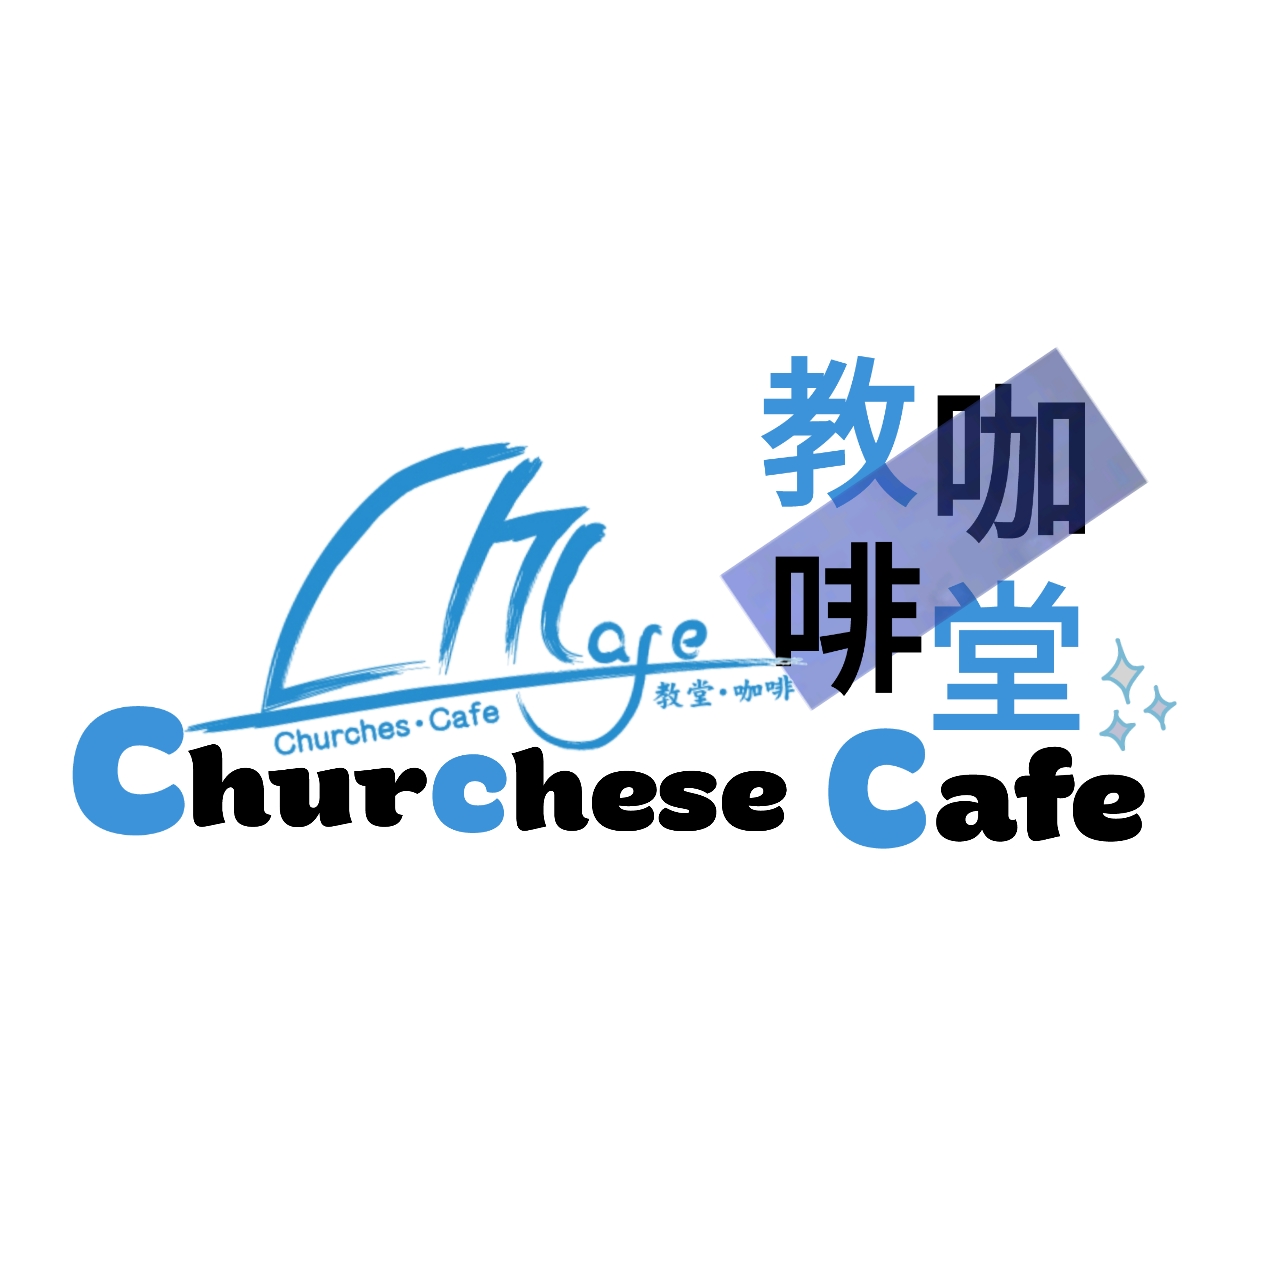 Churches Cafe 教堂咖啡